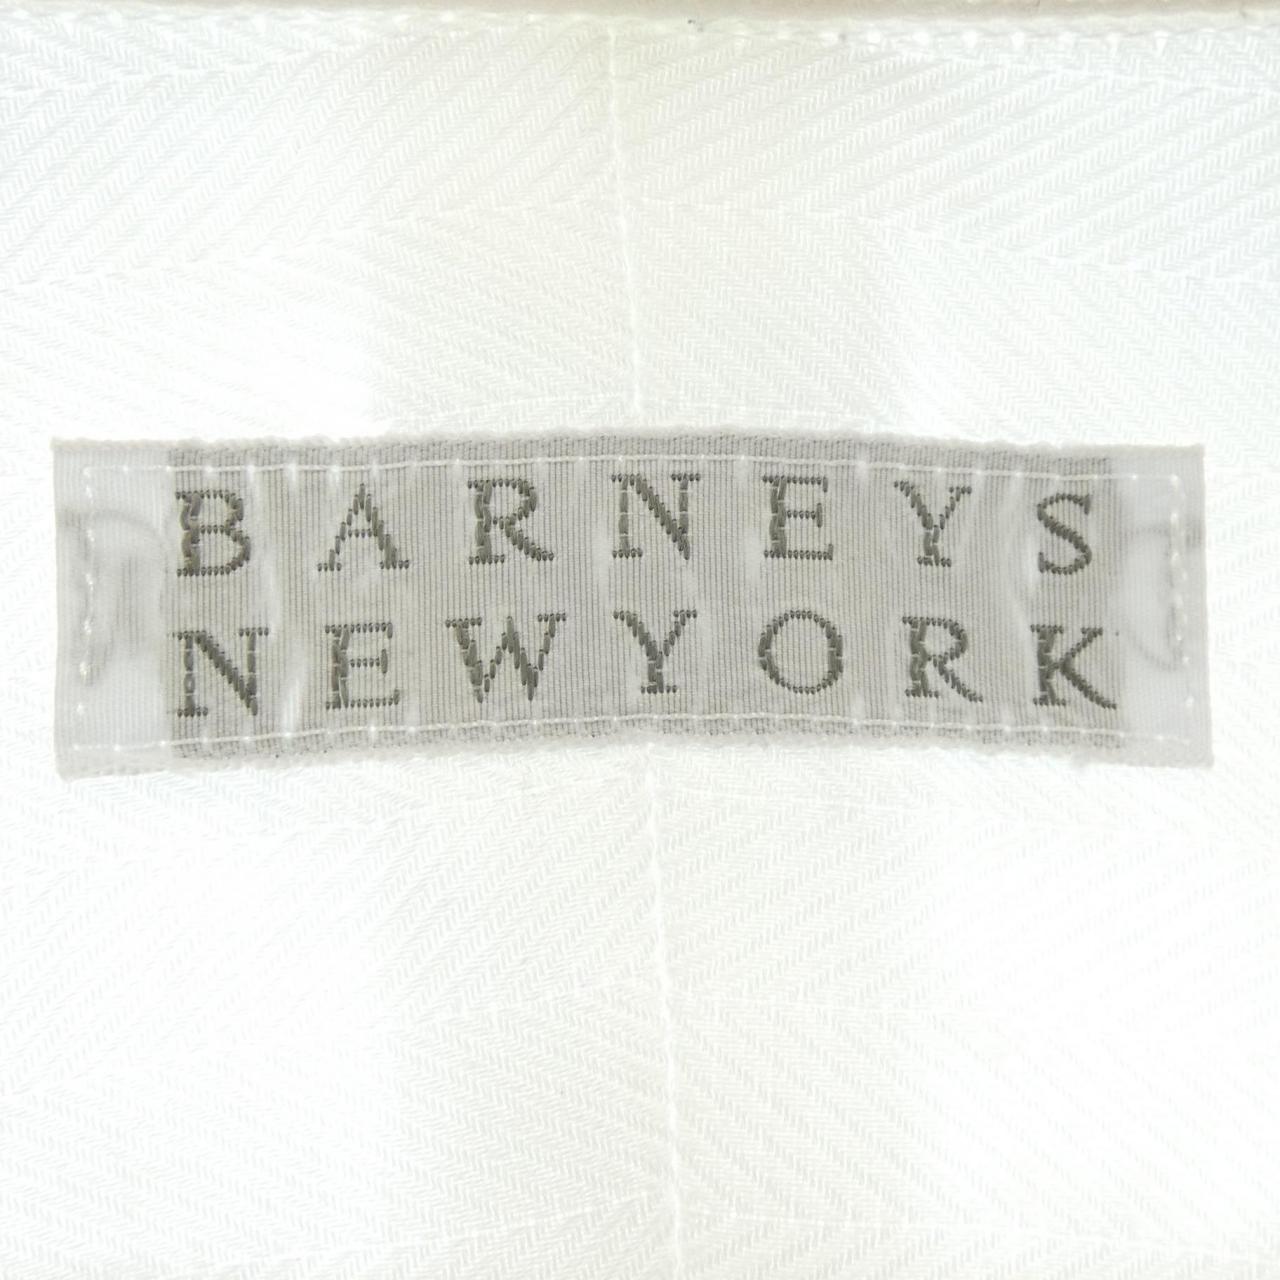 バーニーズニューヨーク BARNEYS NEW YORK シャツ